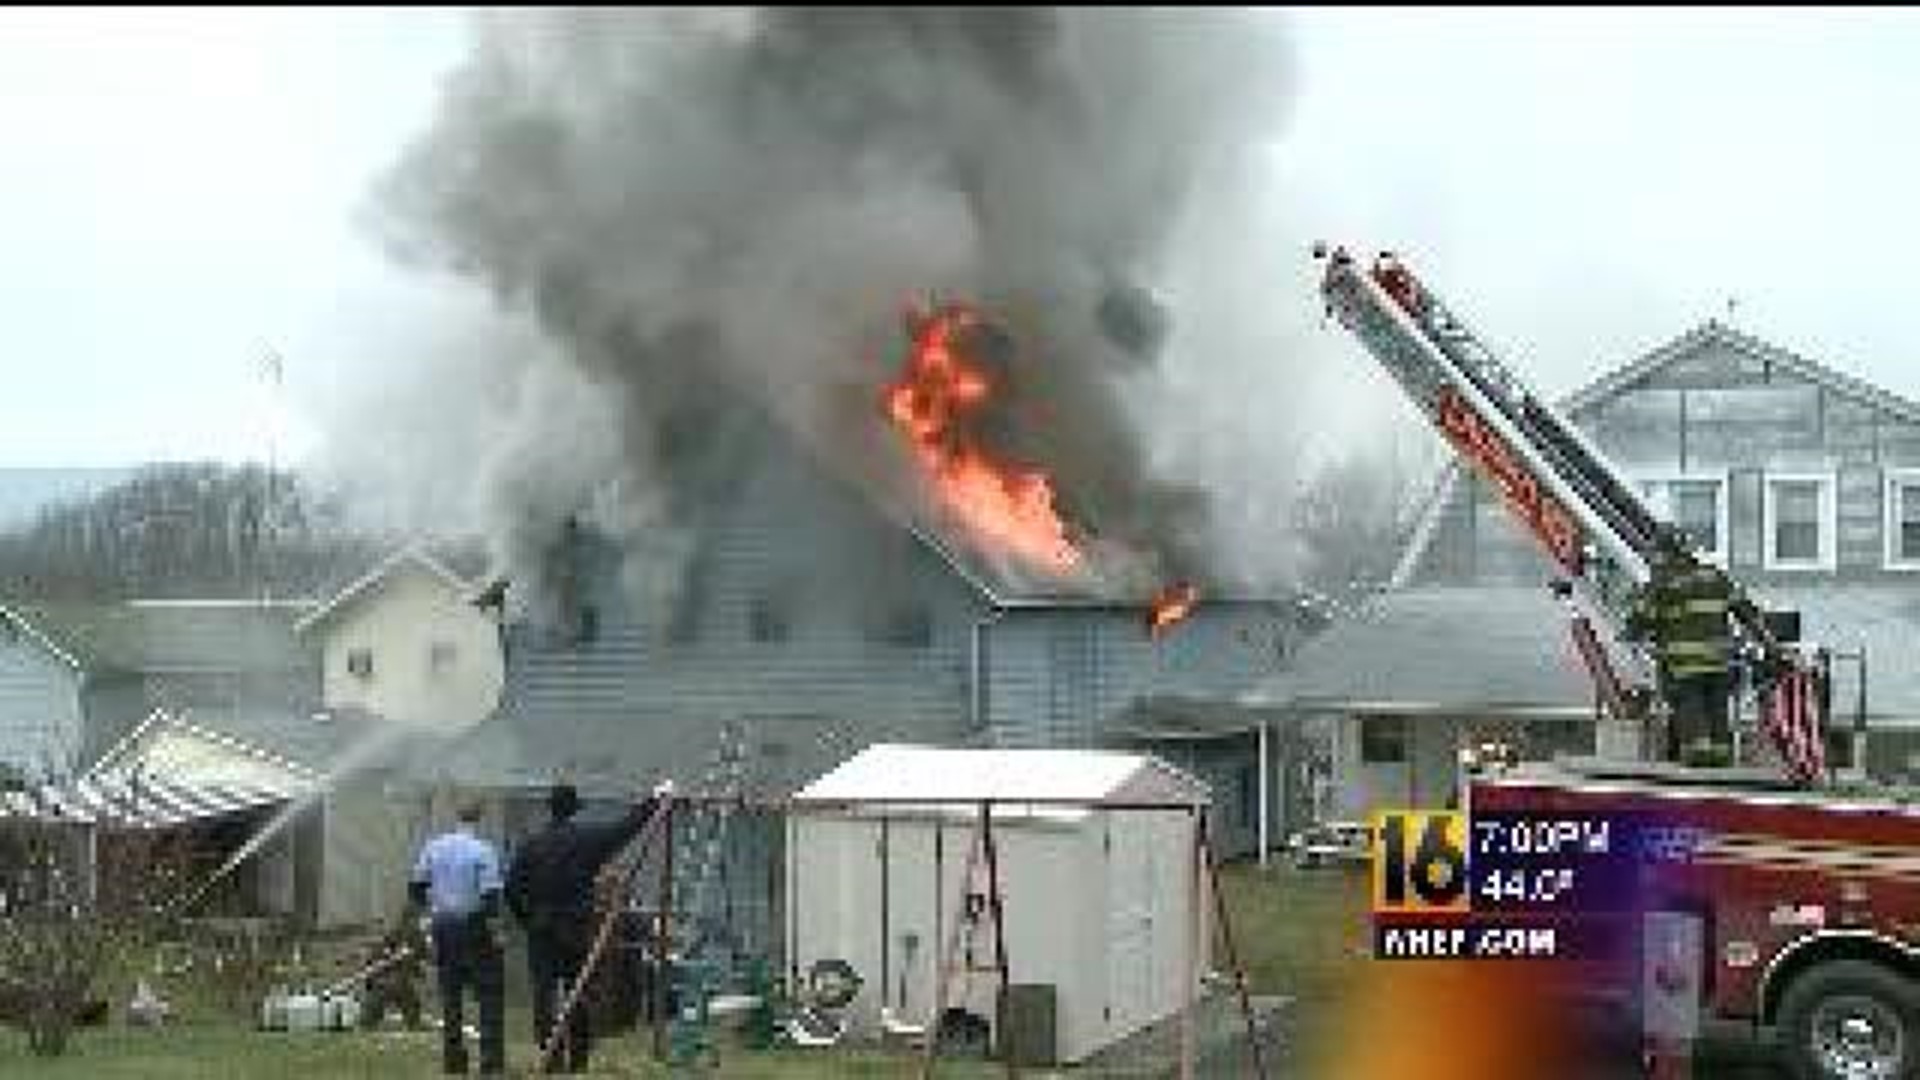 Hughestown Home Destroyed In Blaze